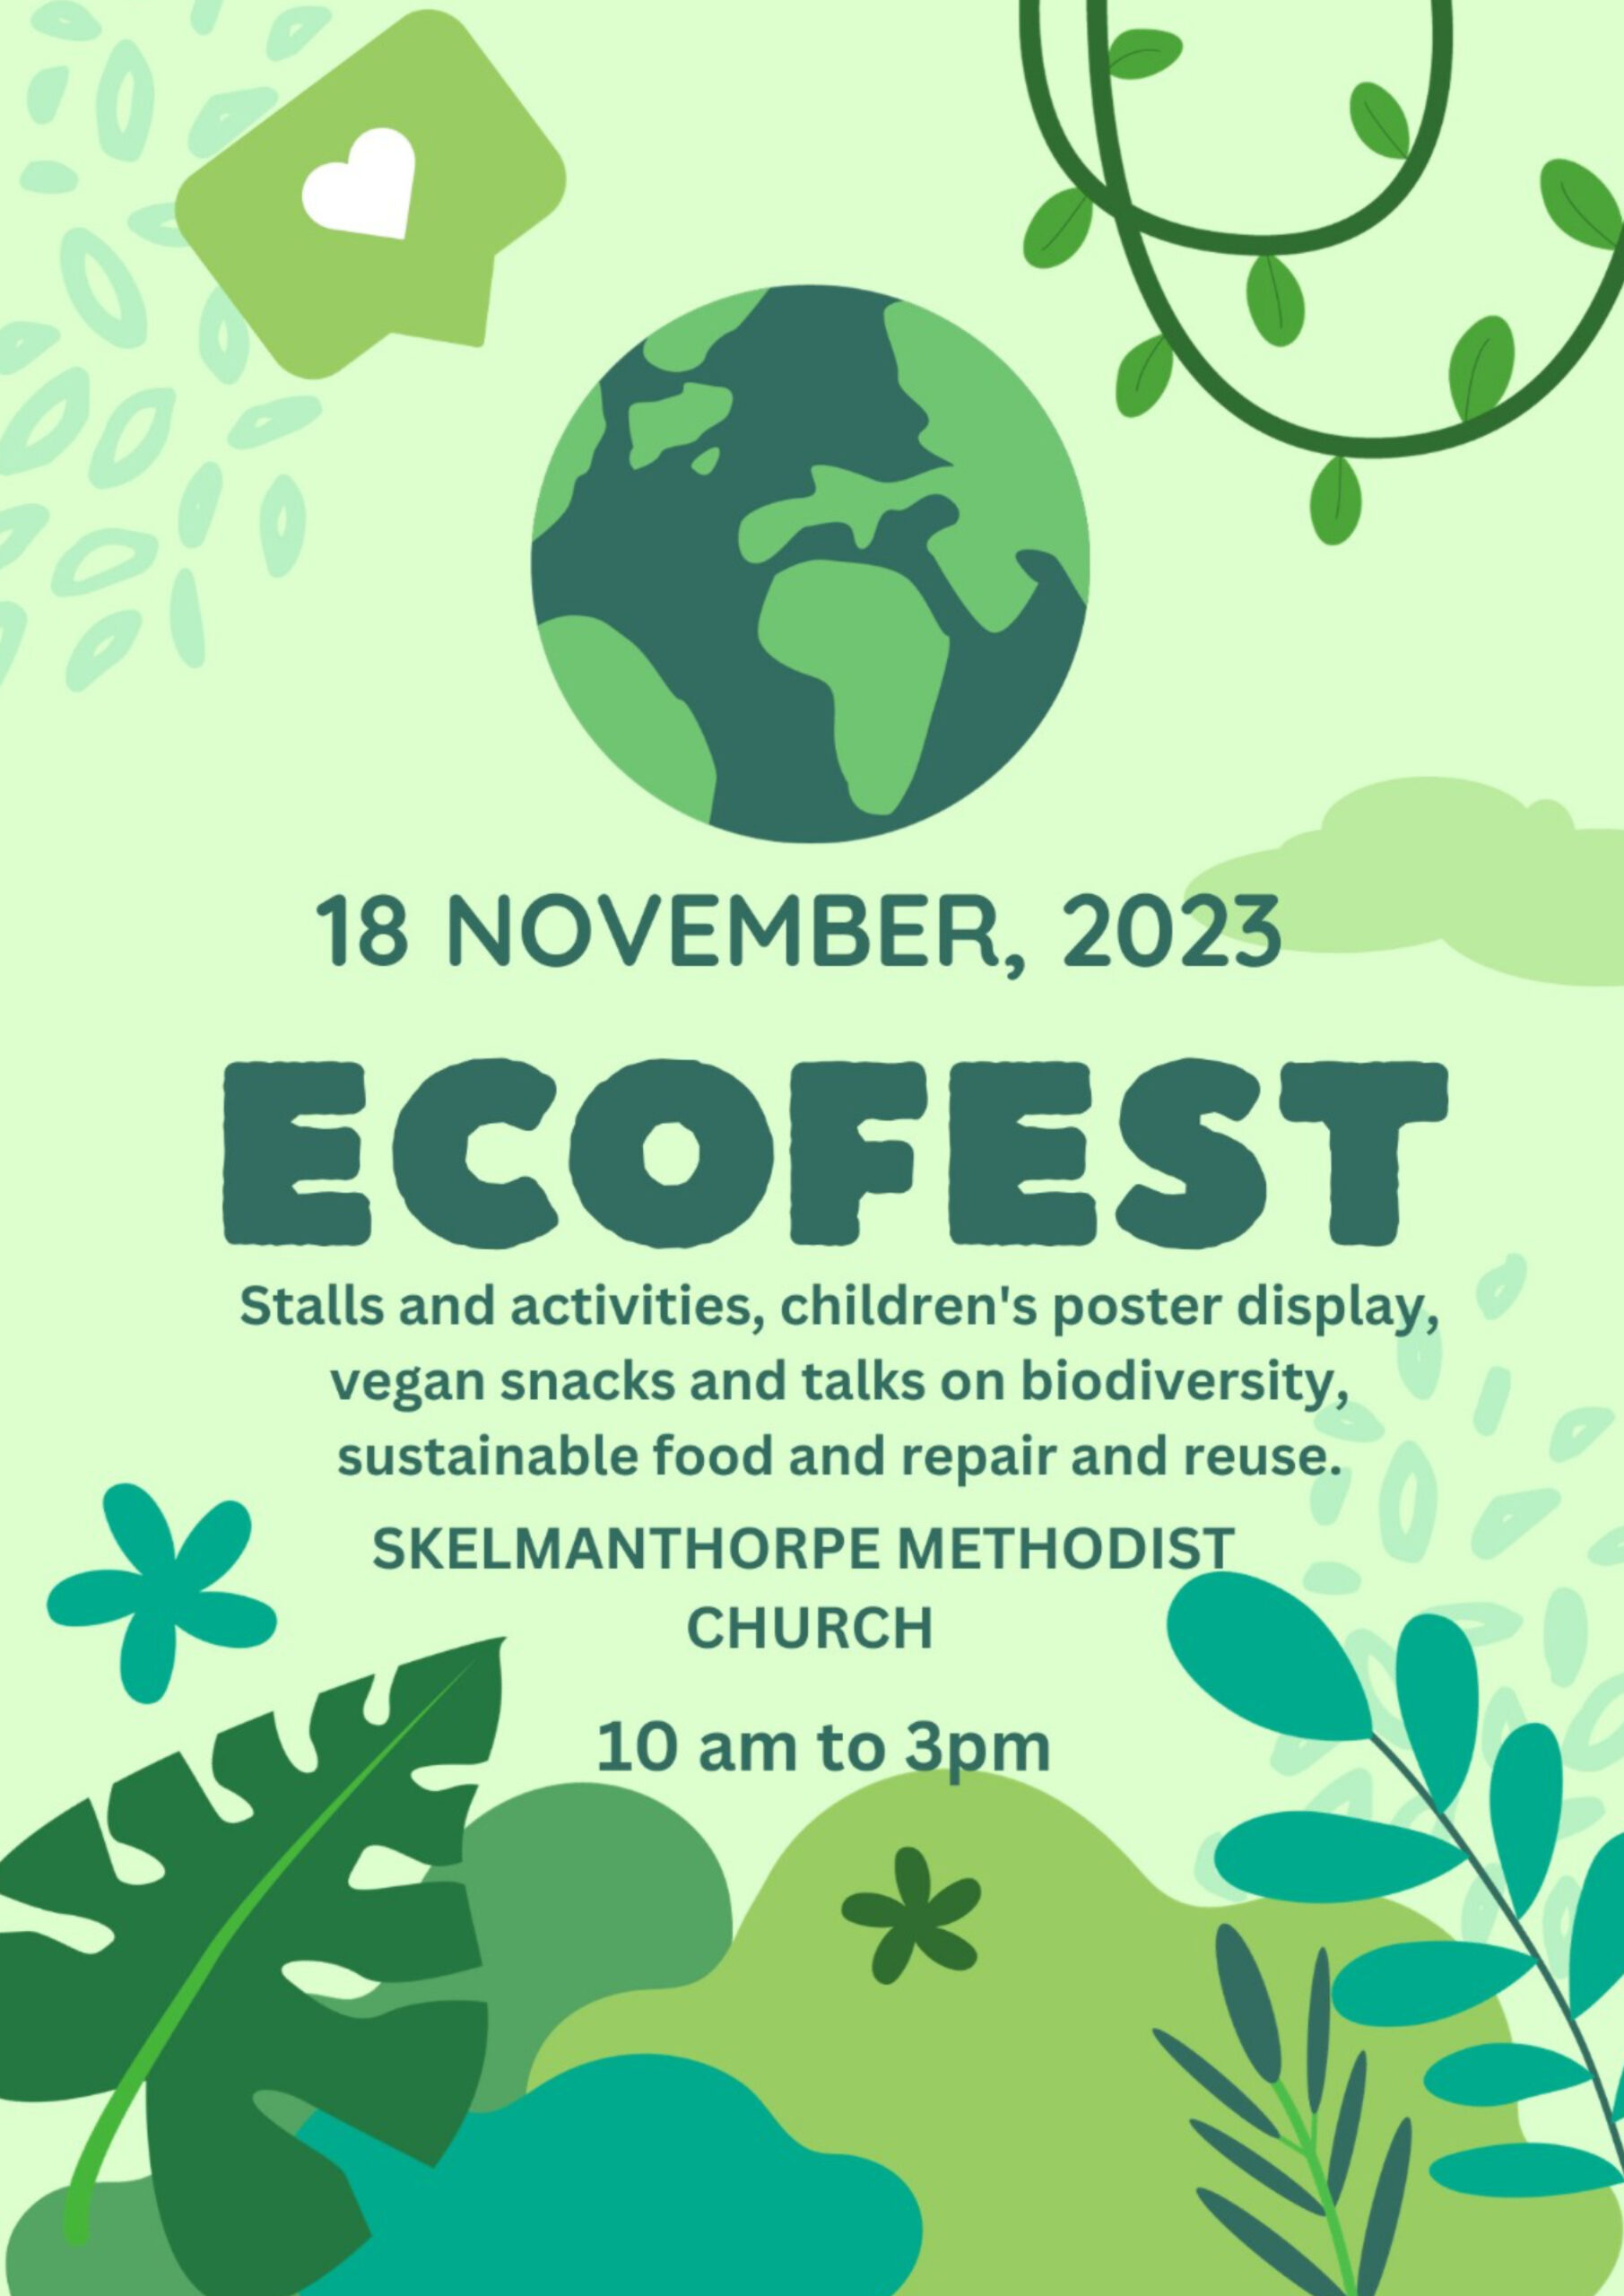 EcoFest 2023!